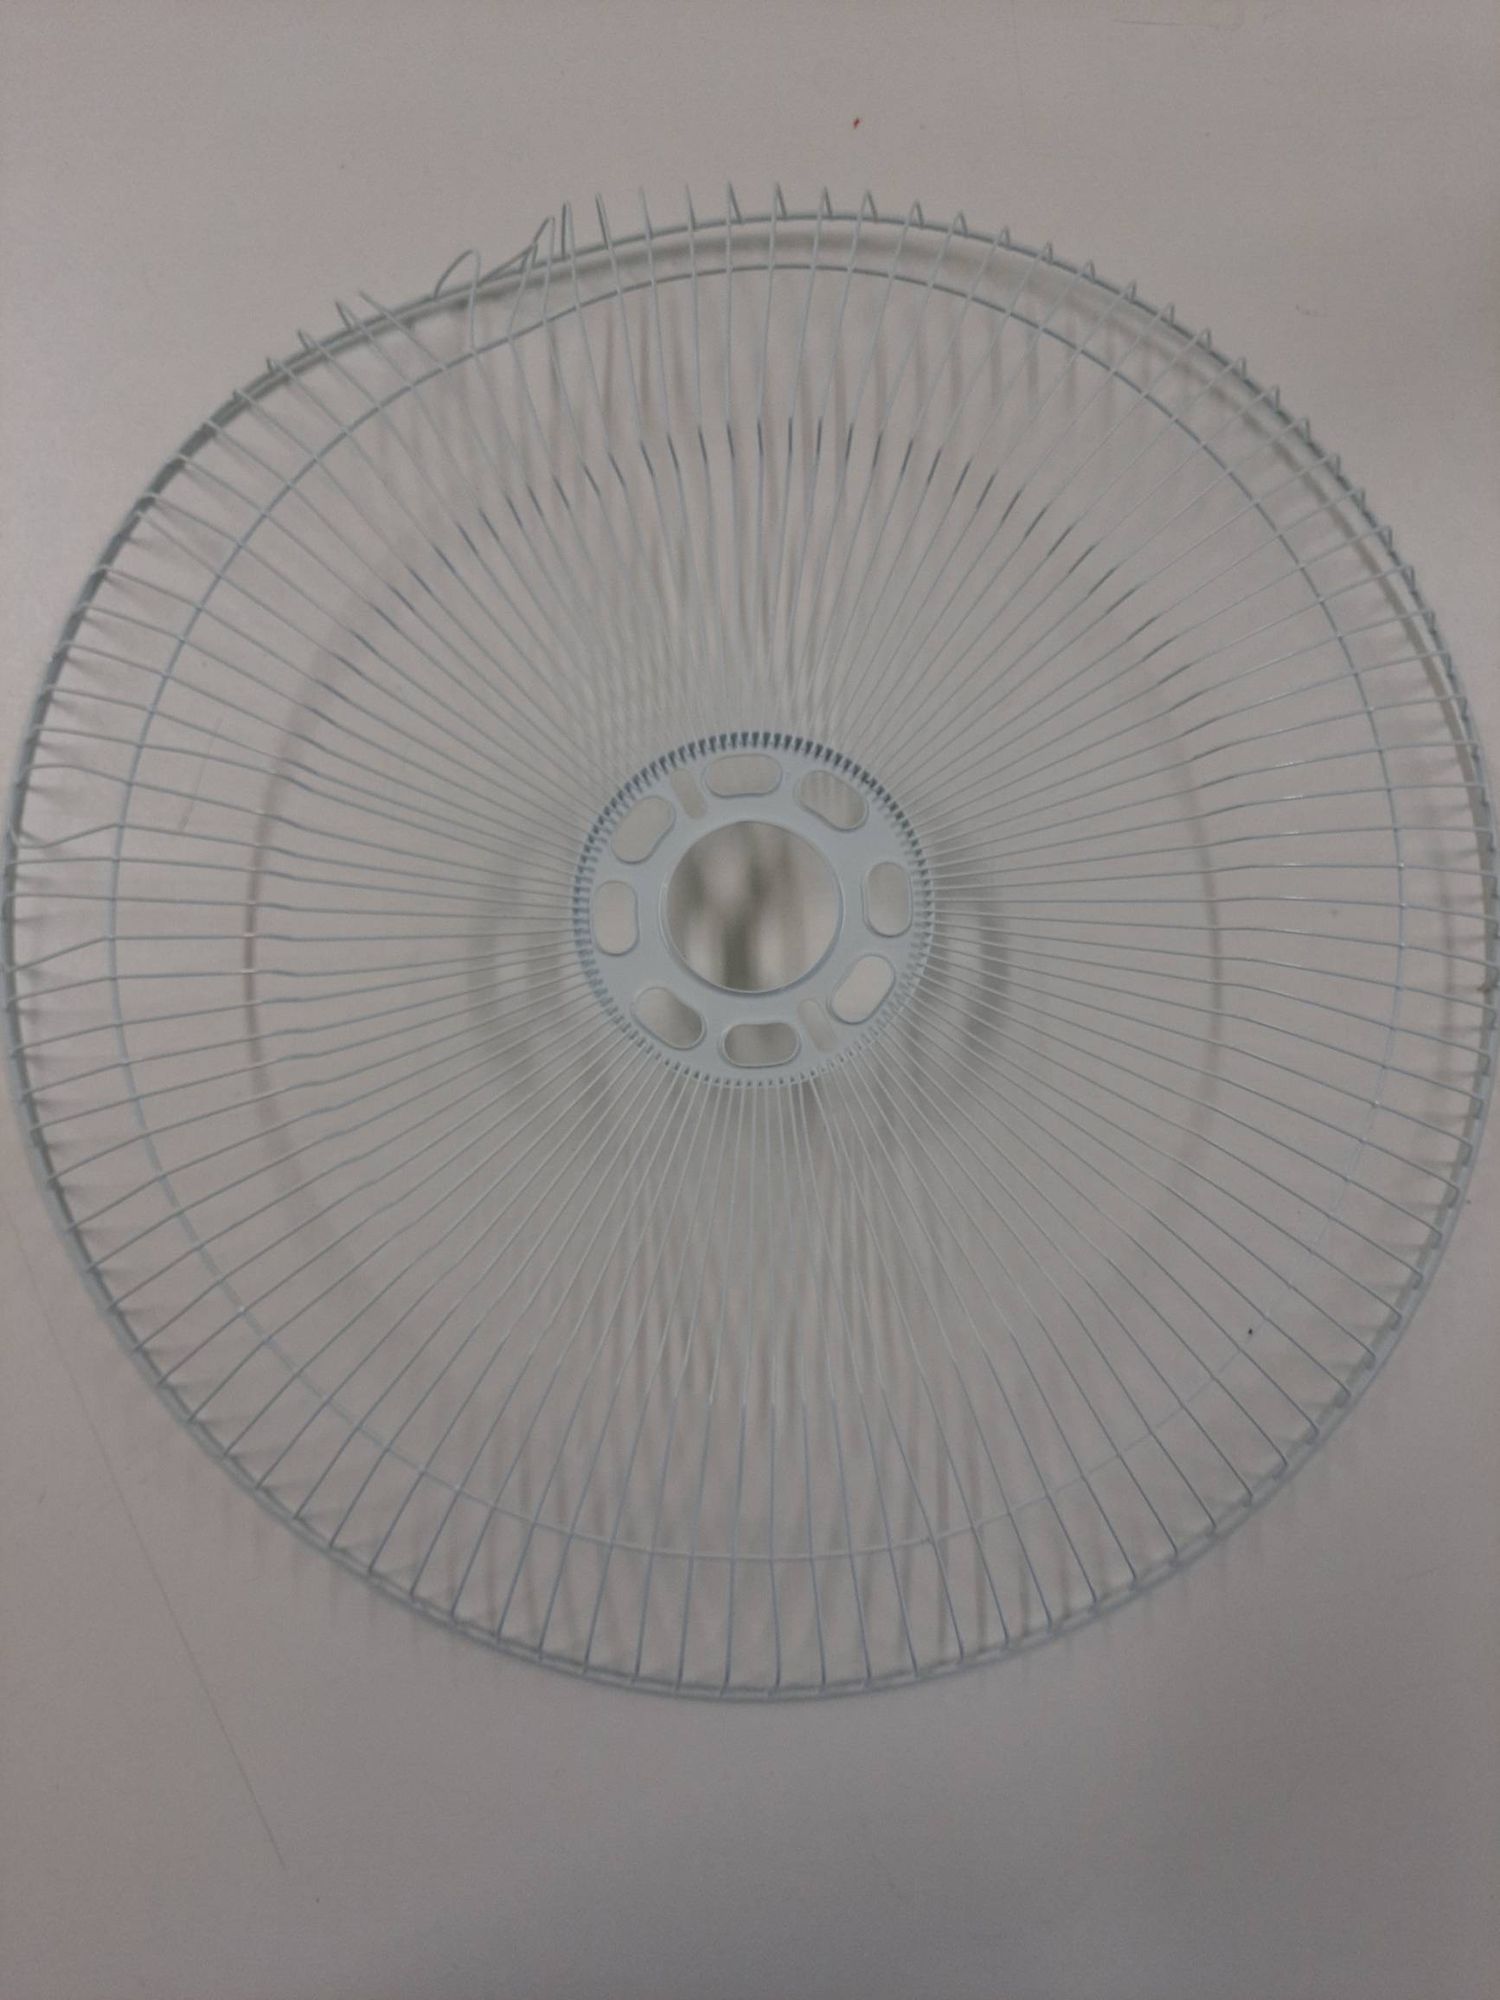 Вентилятор напольный Hiper HSF-02 (HSF02) витринный образец - фото 3